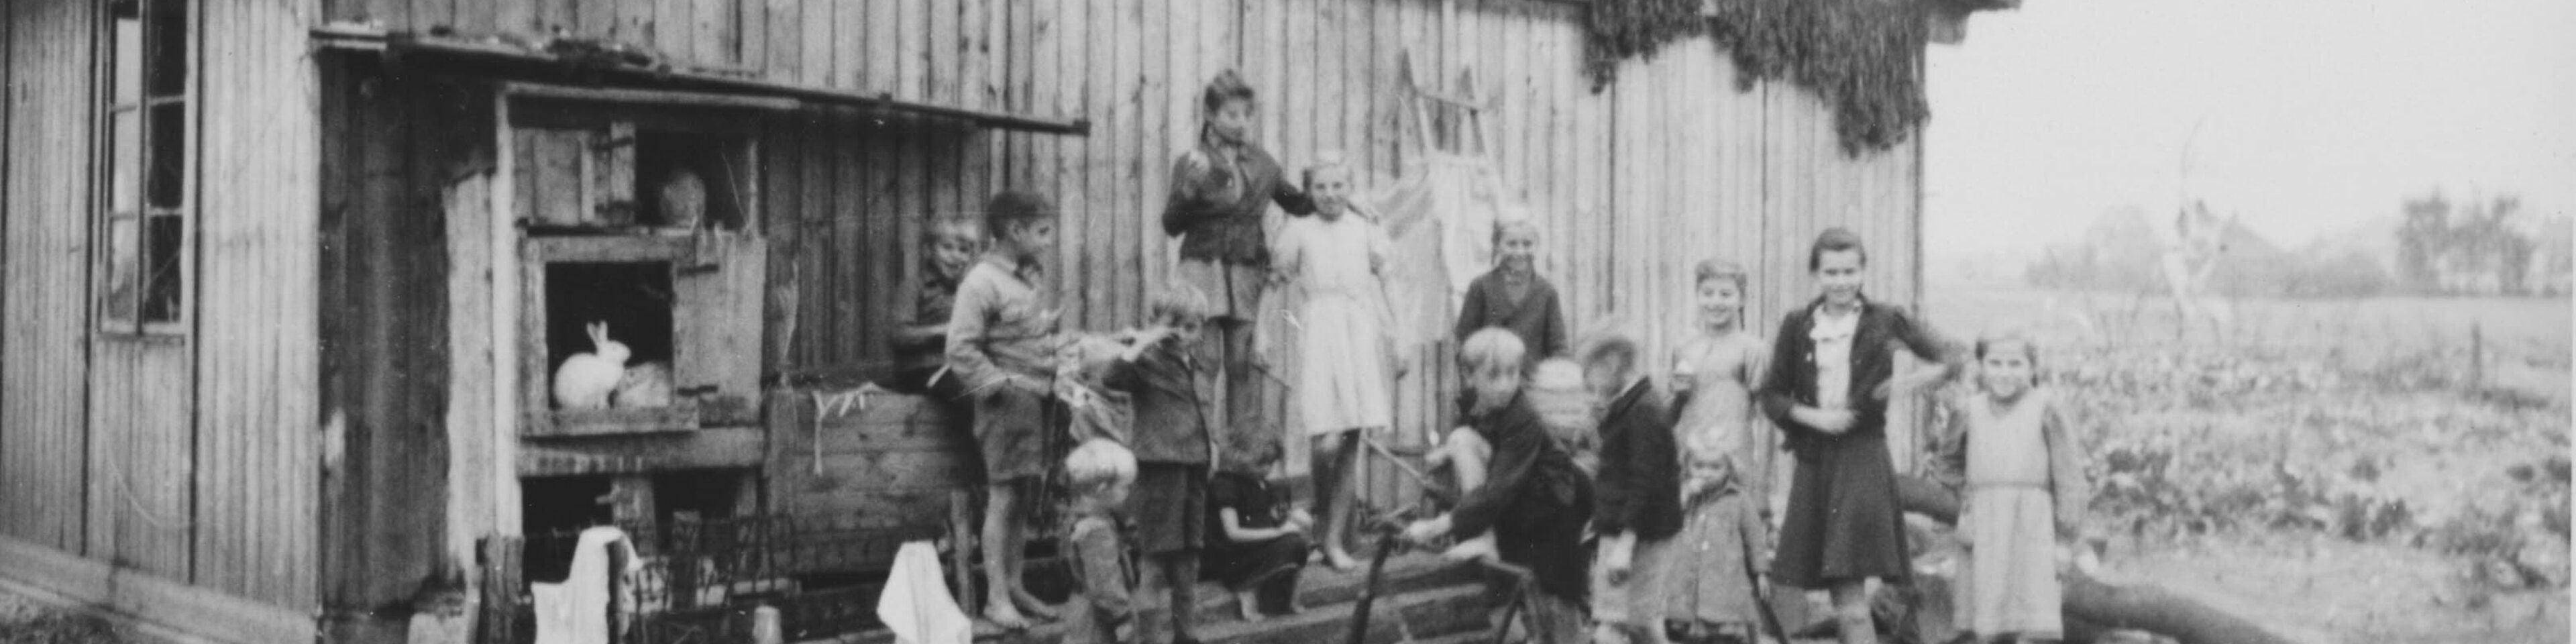 Kinder vor einer Baracke im Lager Allach b. München, ca. 1947. | © (Fotograf unbekannt, Archiv des DiCV München und Freising e. V., Fotosammlung)